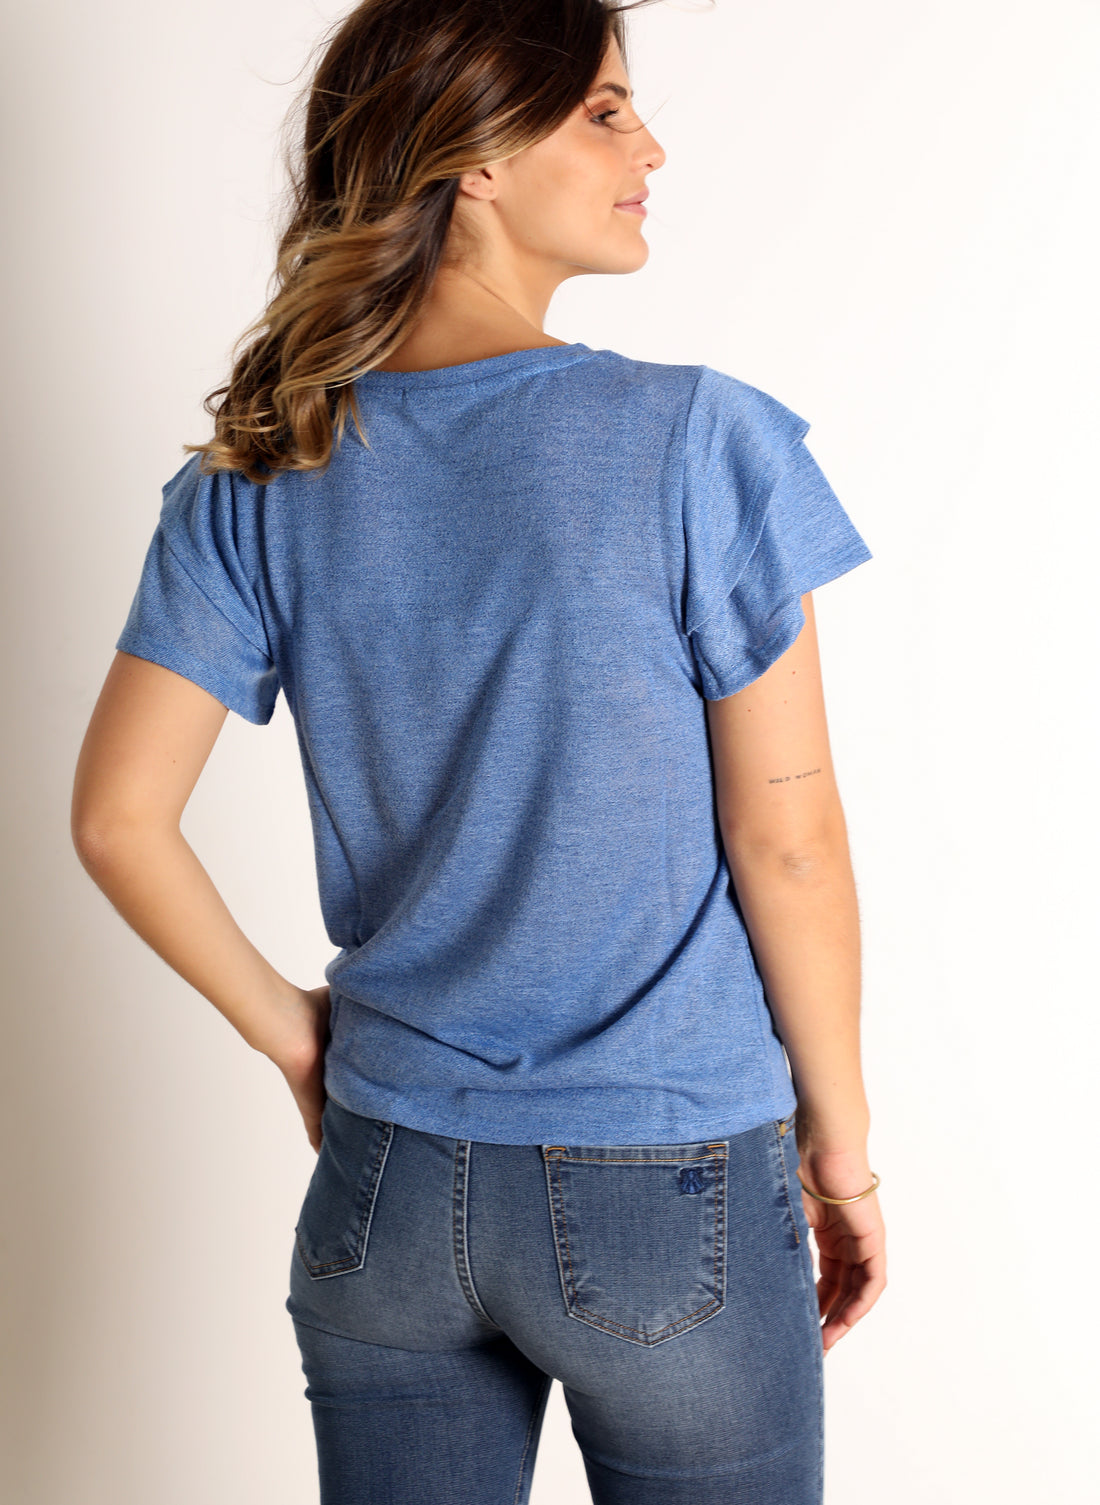 T-shirt Femme Bleu Viscose Double manche Volants